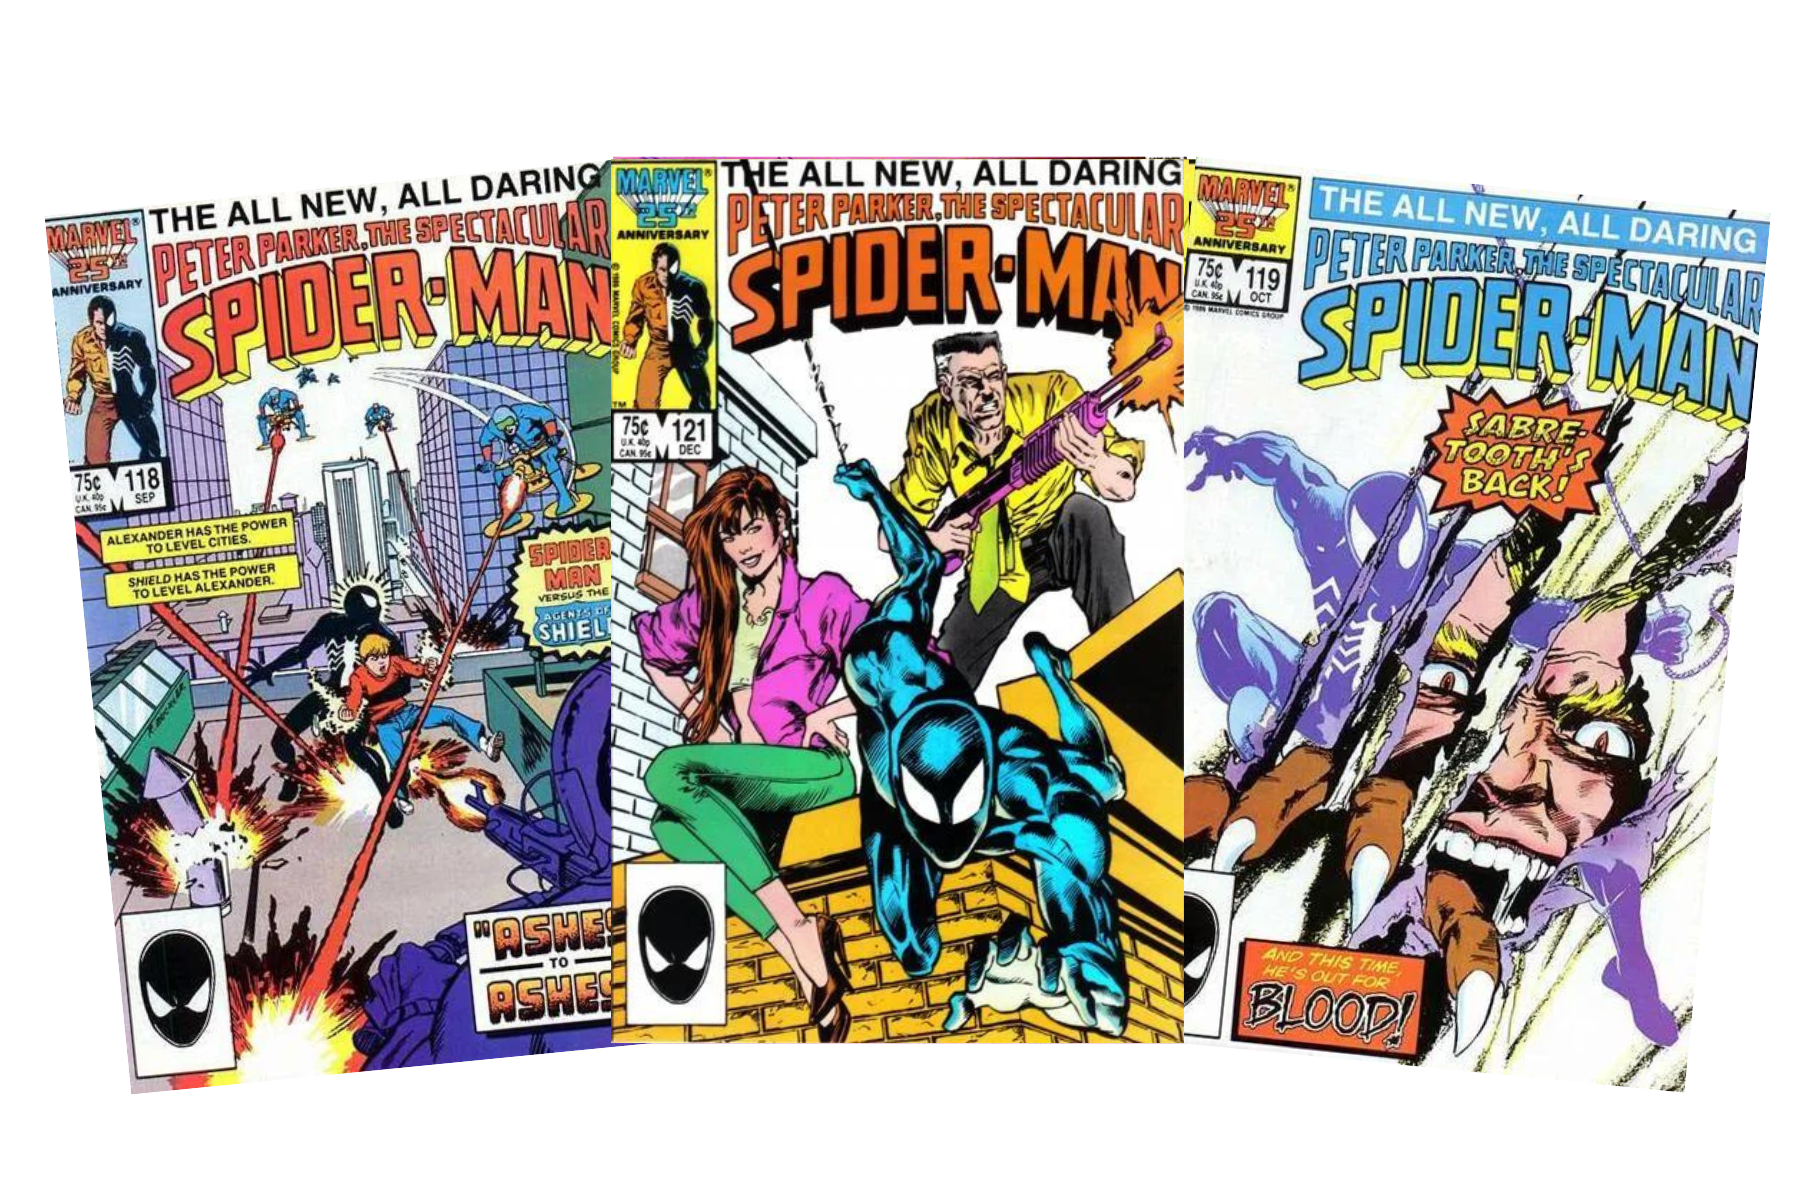 Spectacular Spider-Man #118, Spectacular Spider-Man #119, Spectacular Spider-Man #121